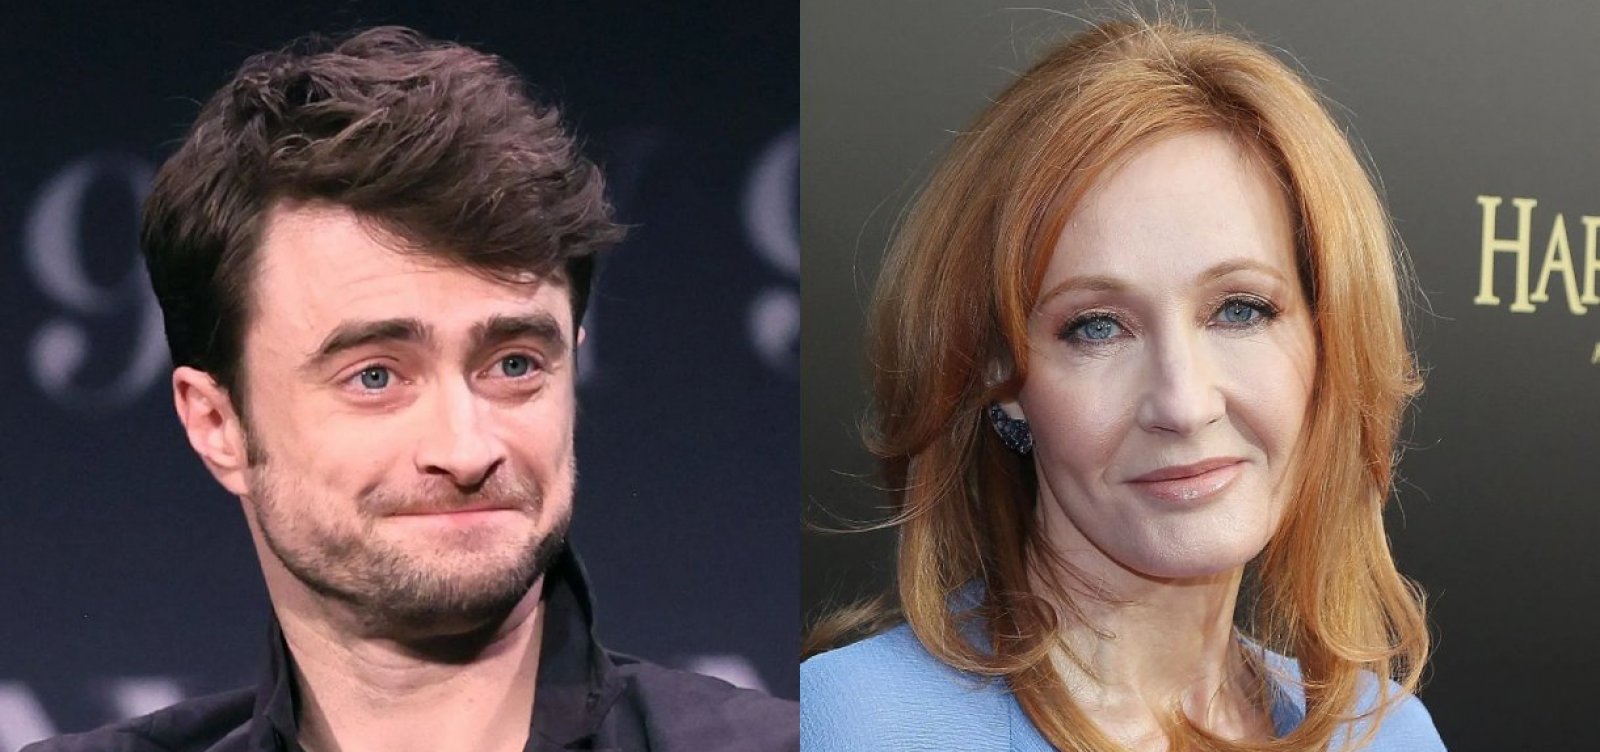 'Me deixa muito triste', diz Daniel Radcliffe sobre postura transfóbica de JK Rowling